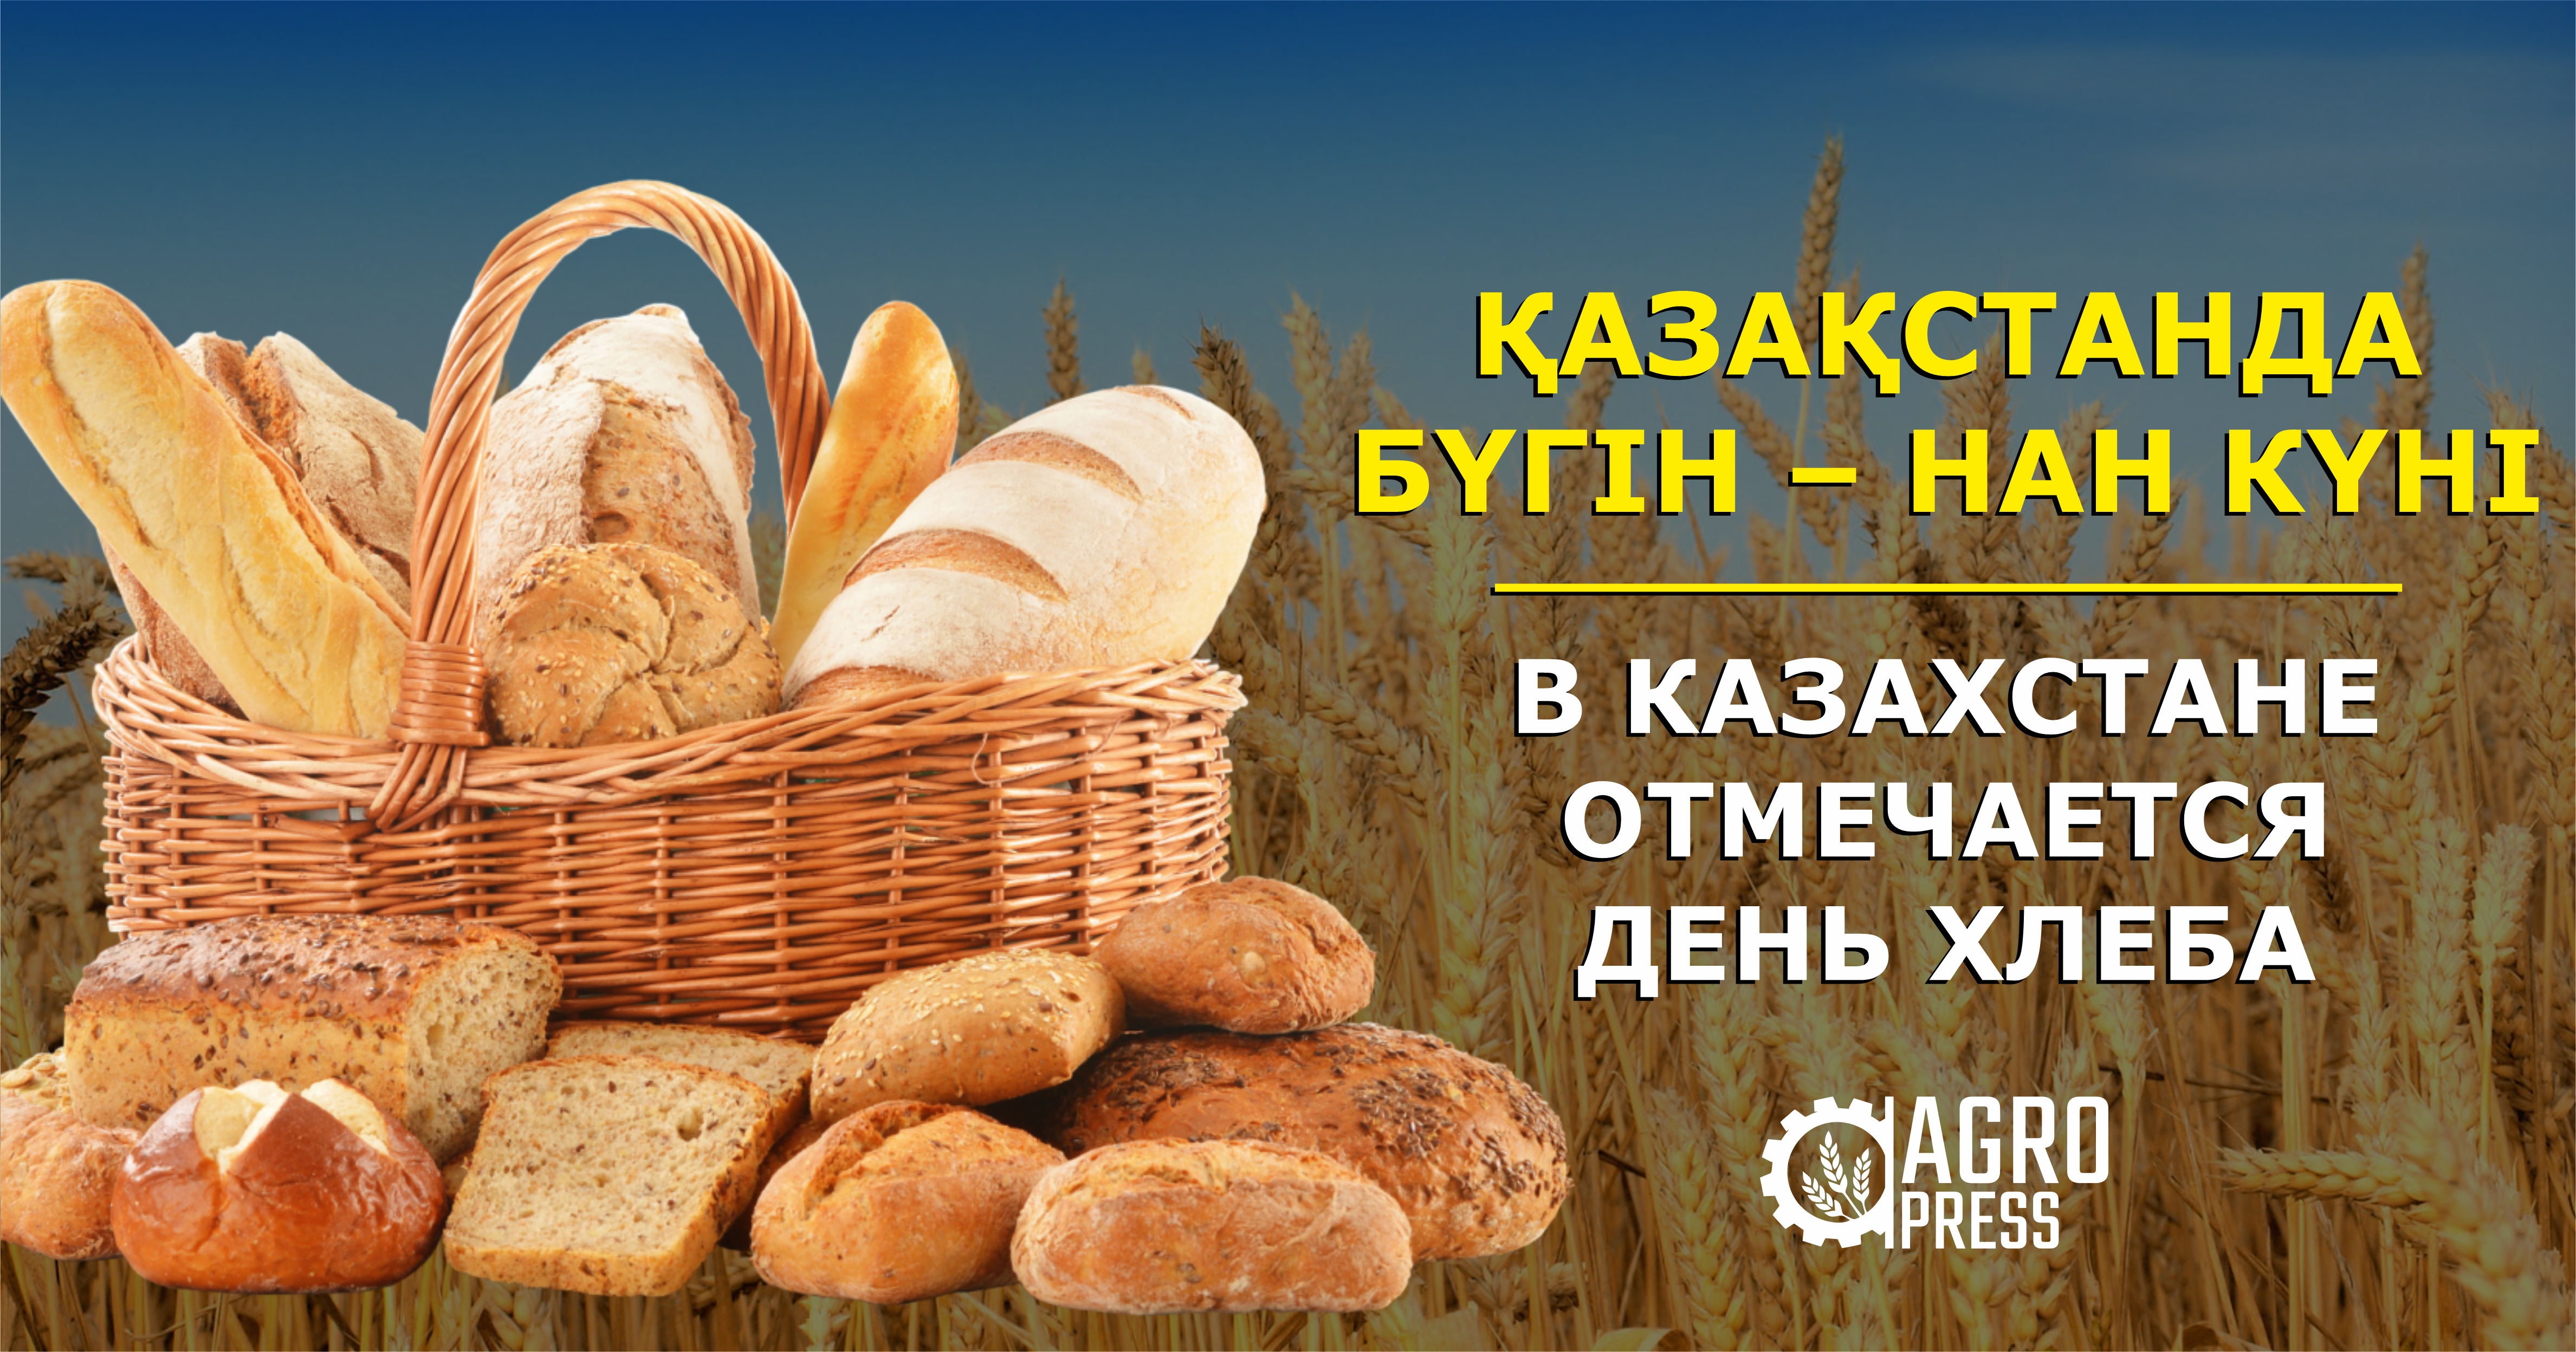 В Казахстане отмечается День хлеба